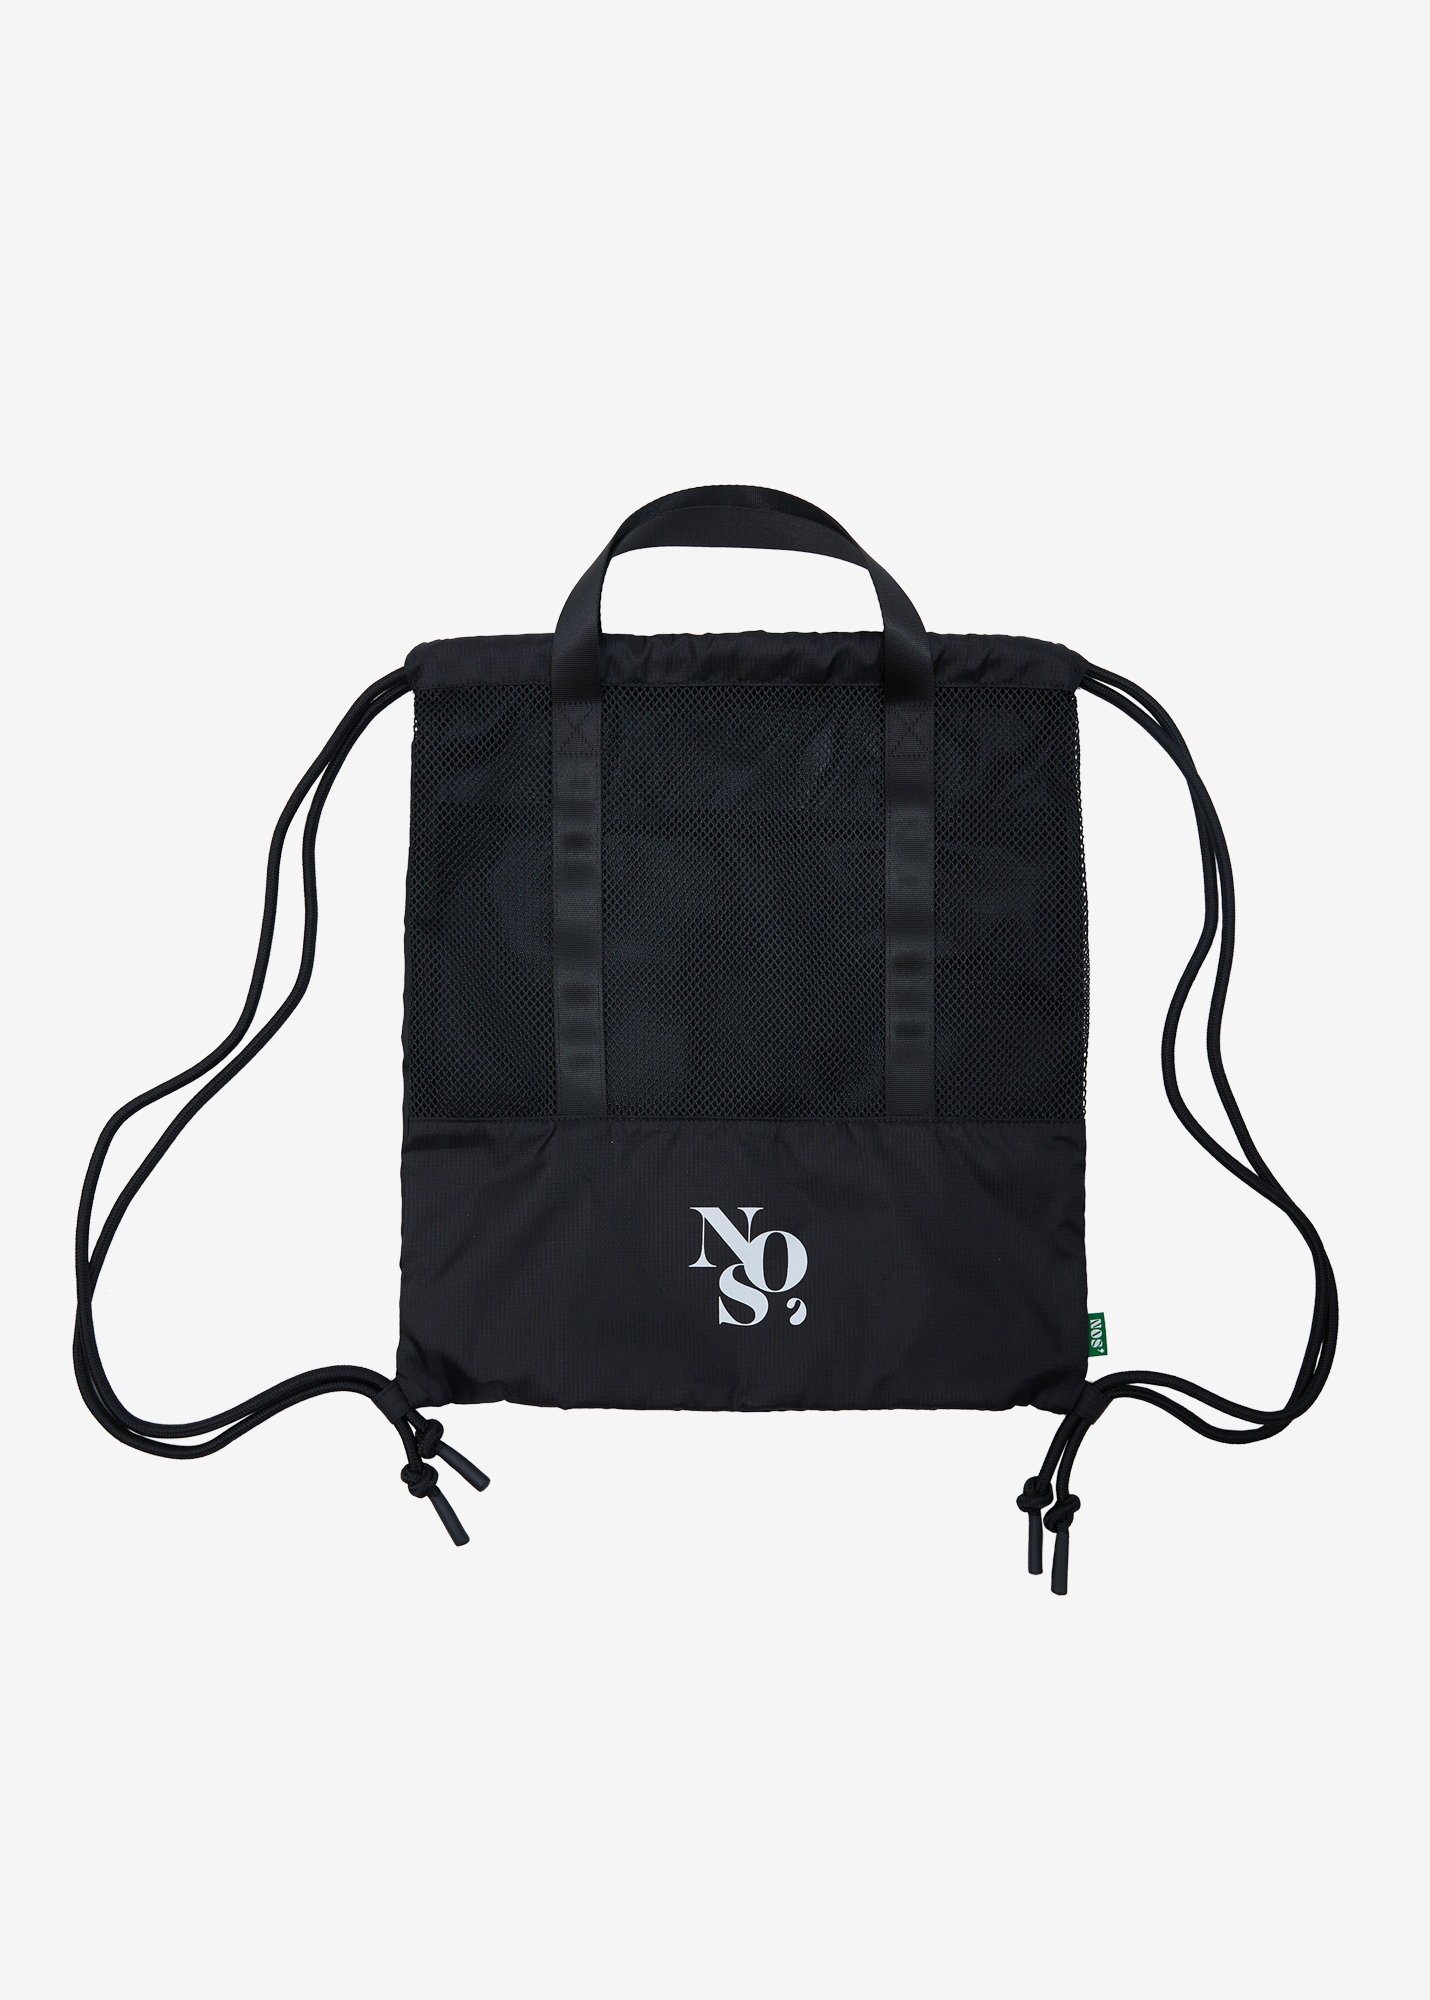 NOS7 Mesh backpack - Black